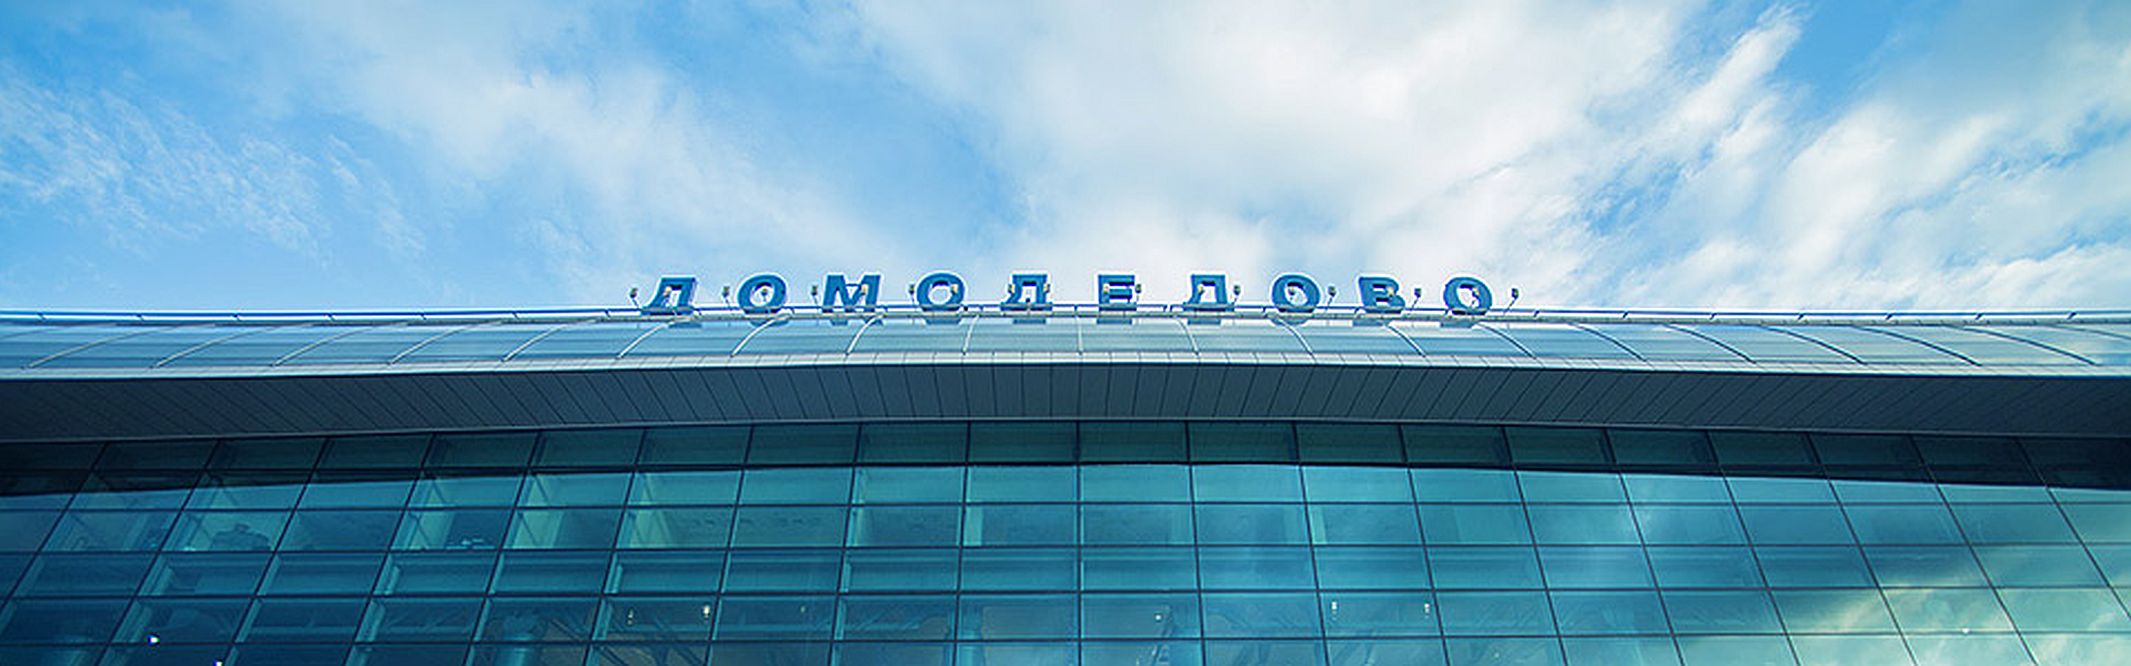 Центр торговли за 65 млрд рублей построят на территории "Аэротрополиса" Домодедово